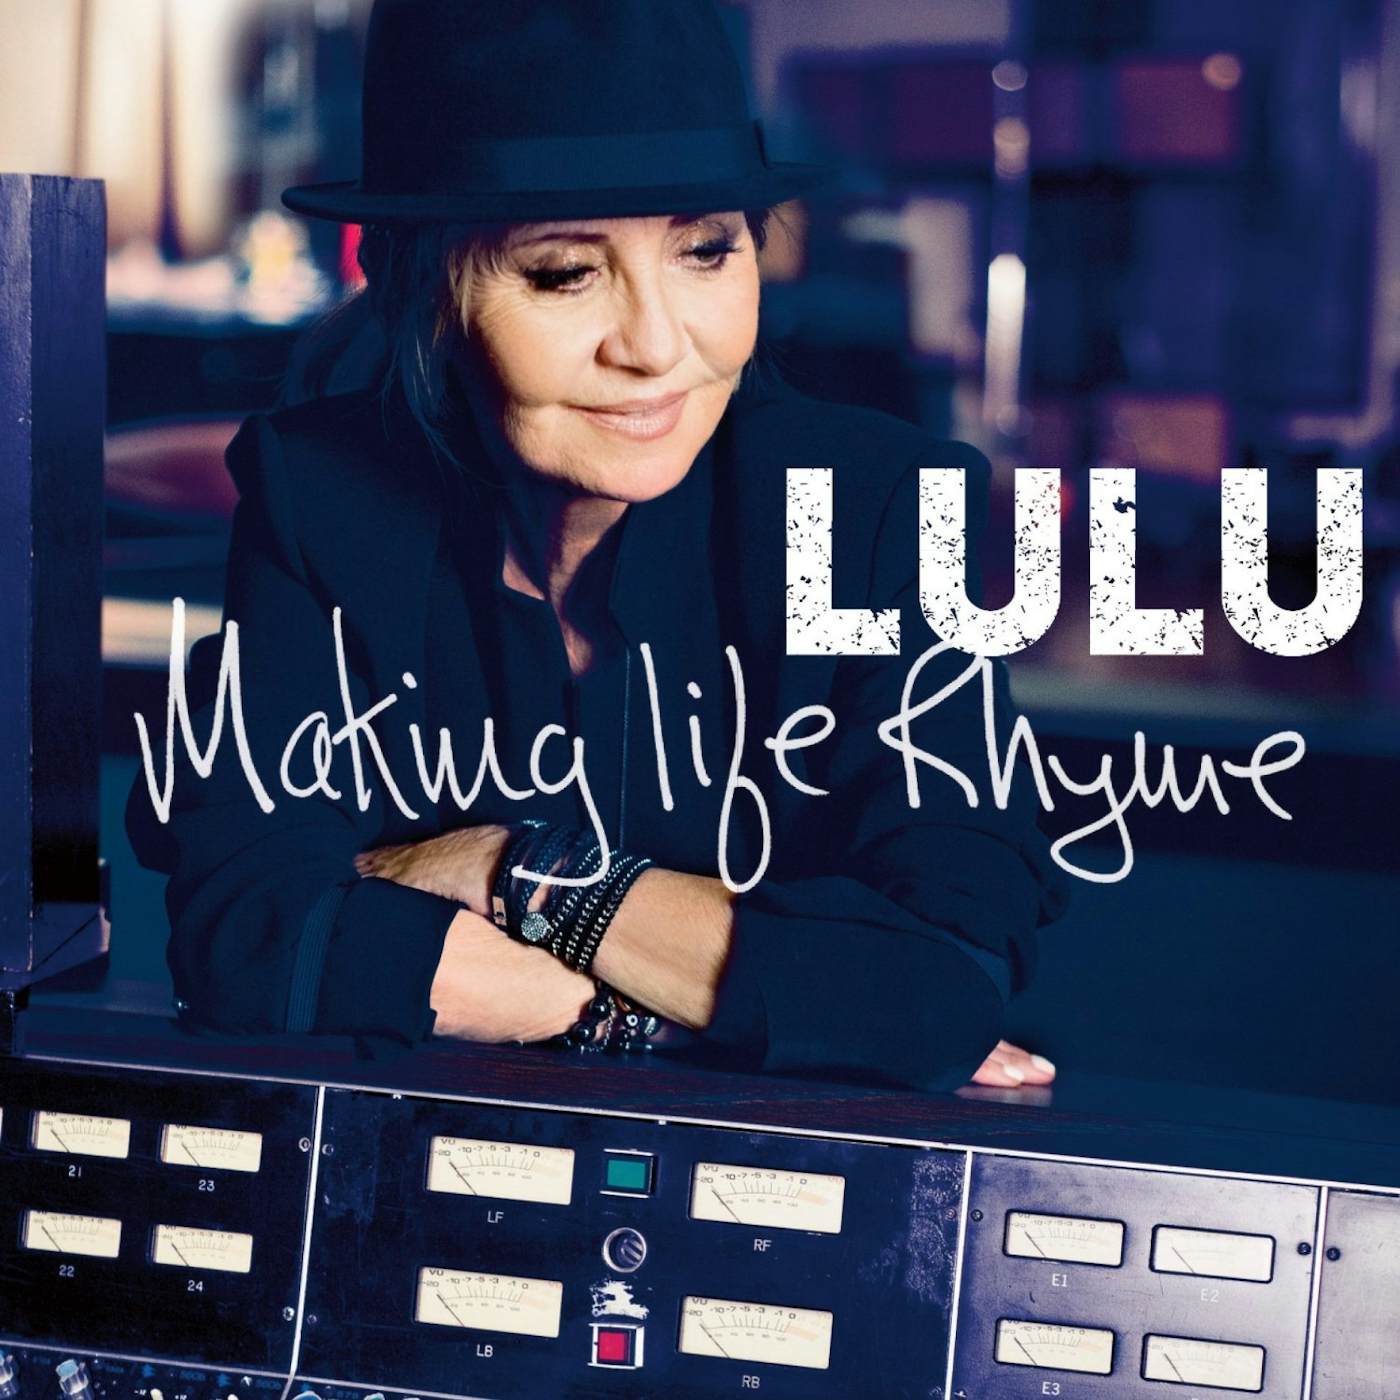 Lulu MAKING LIFE RHYME CD